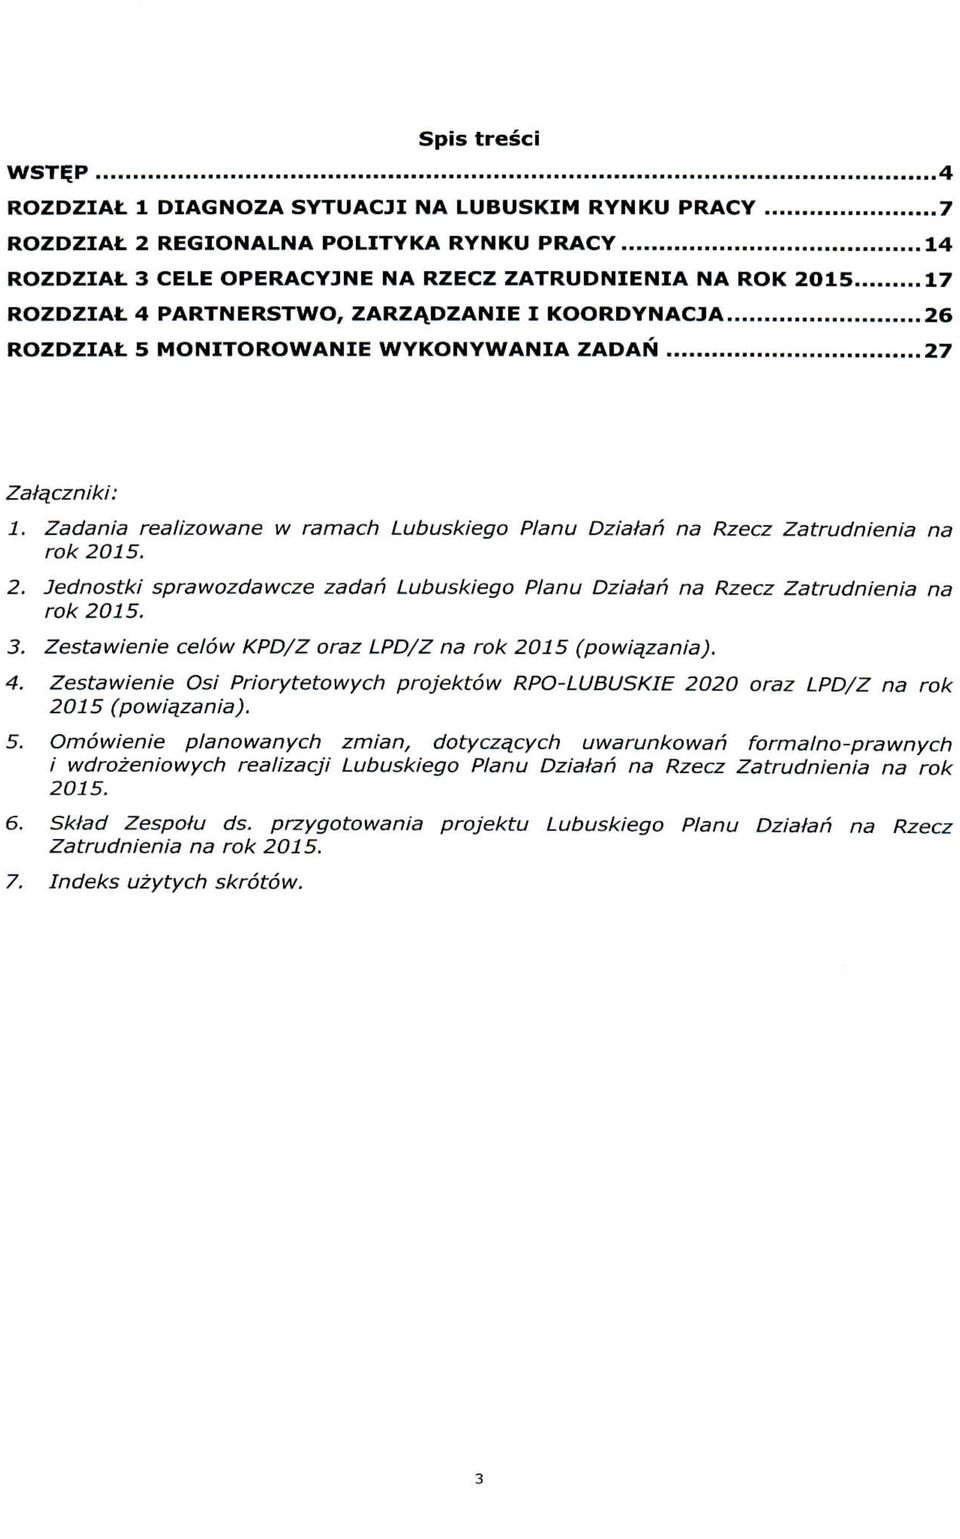 Jednostki sprawozdawcze zadan Lubuskiego Planu Dziaian na Rzecz Zatrudnienia na rok 2015. 3. Zestawienie celow KPD/Z oraz LPD/Z na rok 2015 (powiqzania). 4.